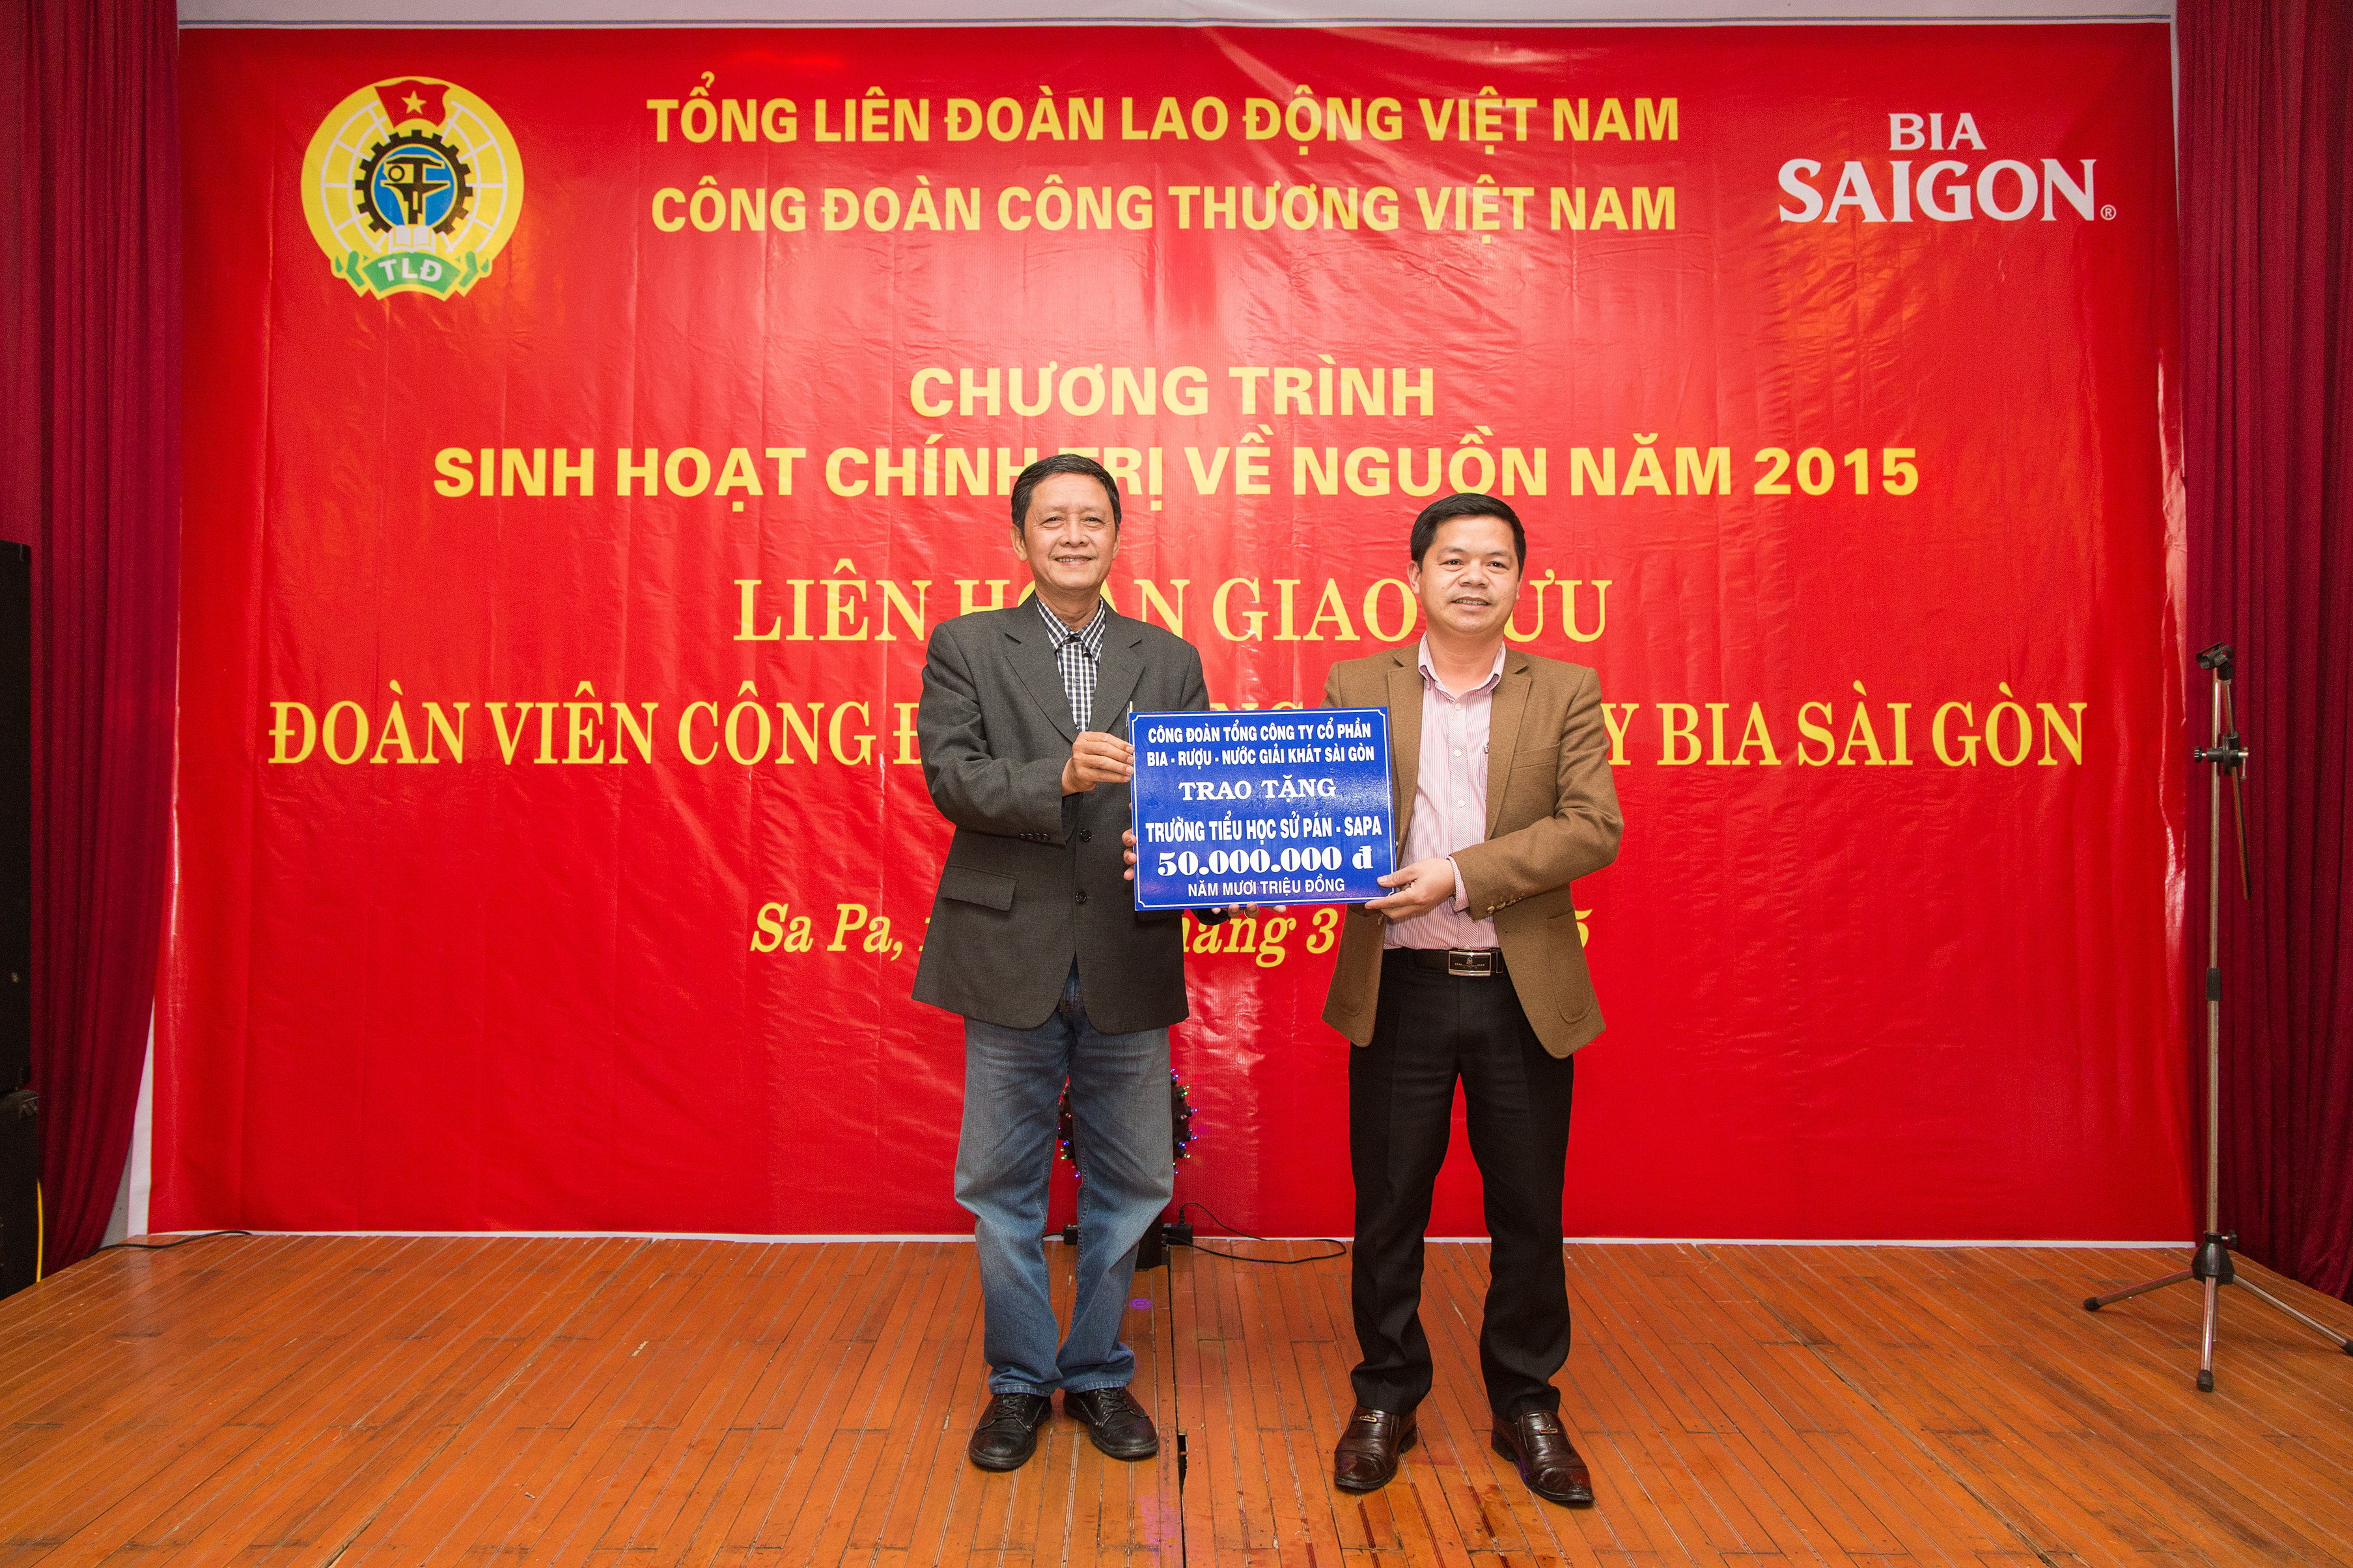 Bia Sài Gòn với Chương trình “Về nguồn 2015”